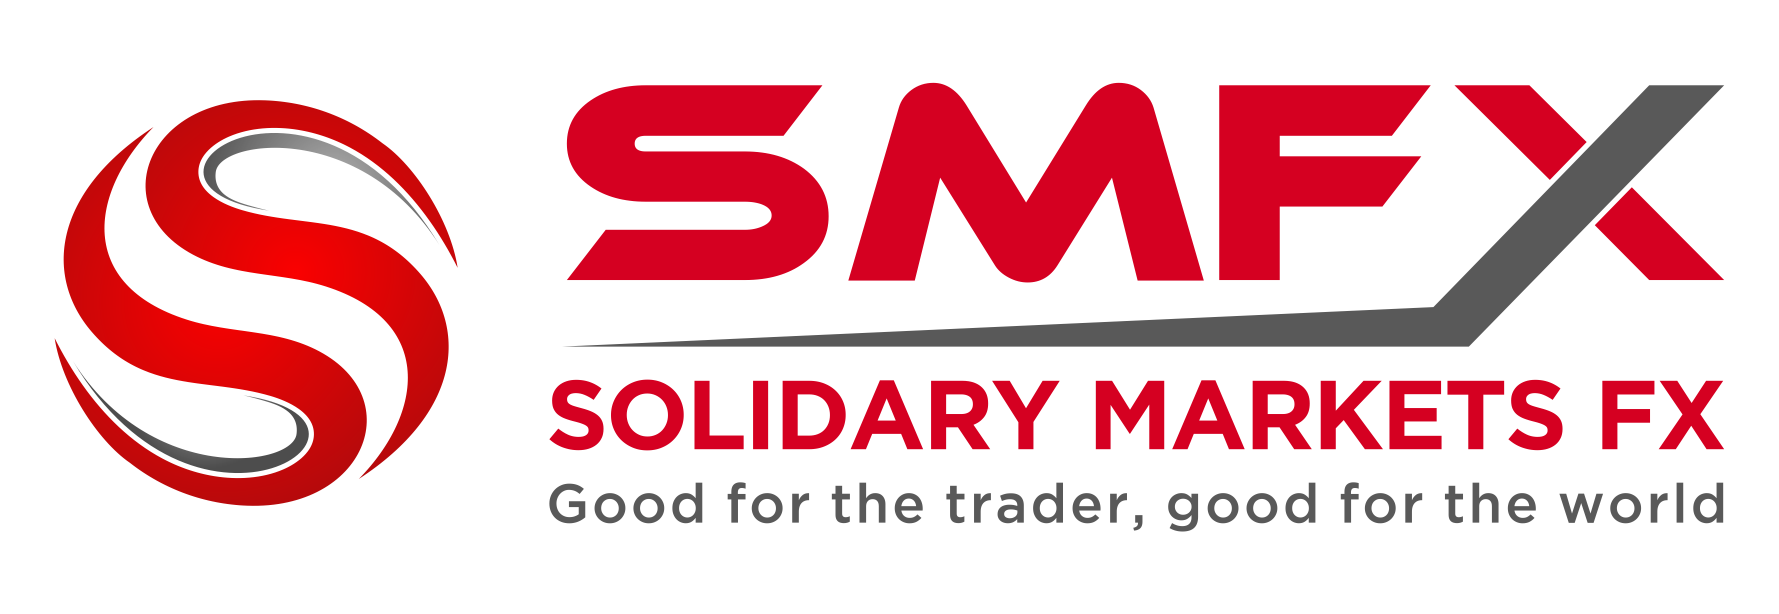 Логотип Solidary Markets FX